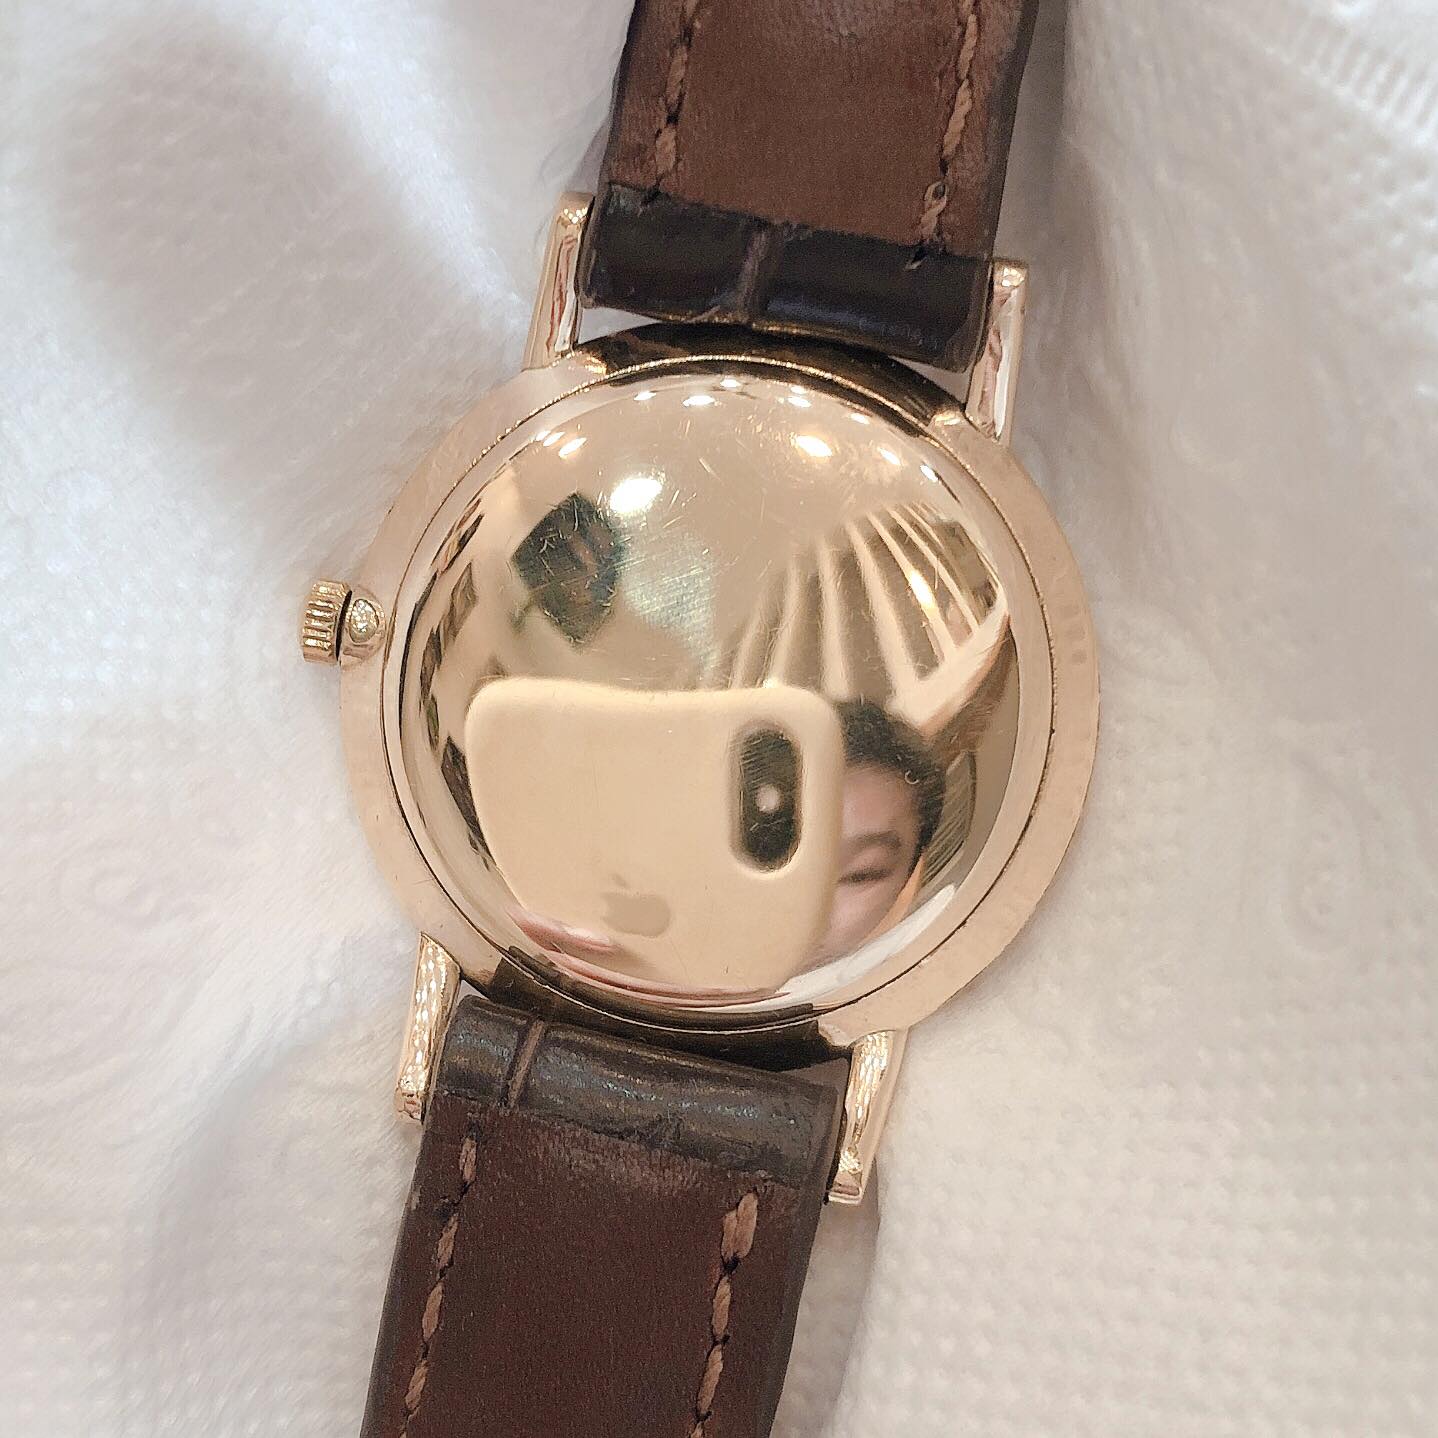 Đồng hồ cổ Seiko Crown kim đĩa lên dây 14k goldfilled chính hãng nhật bản